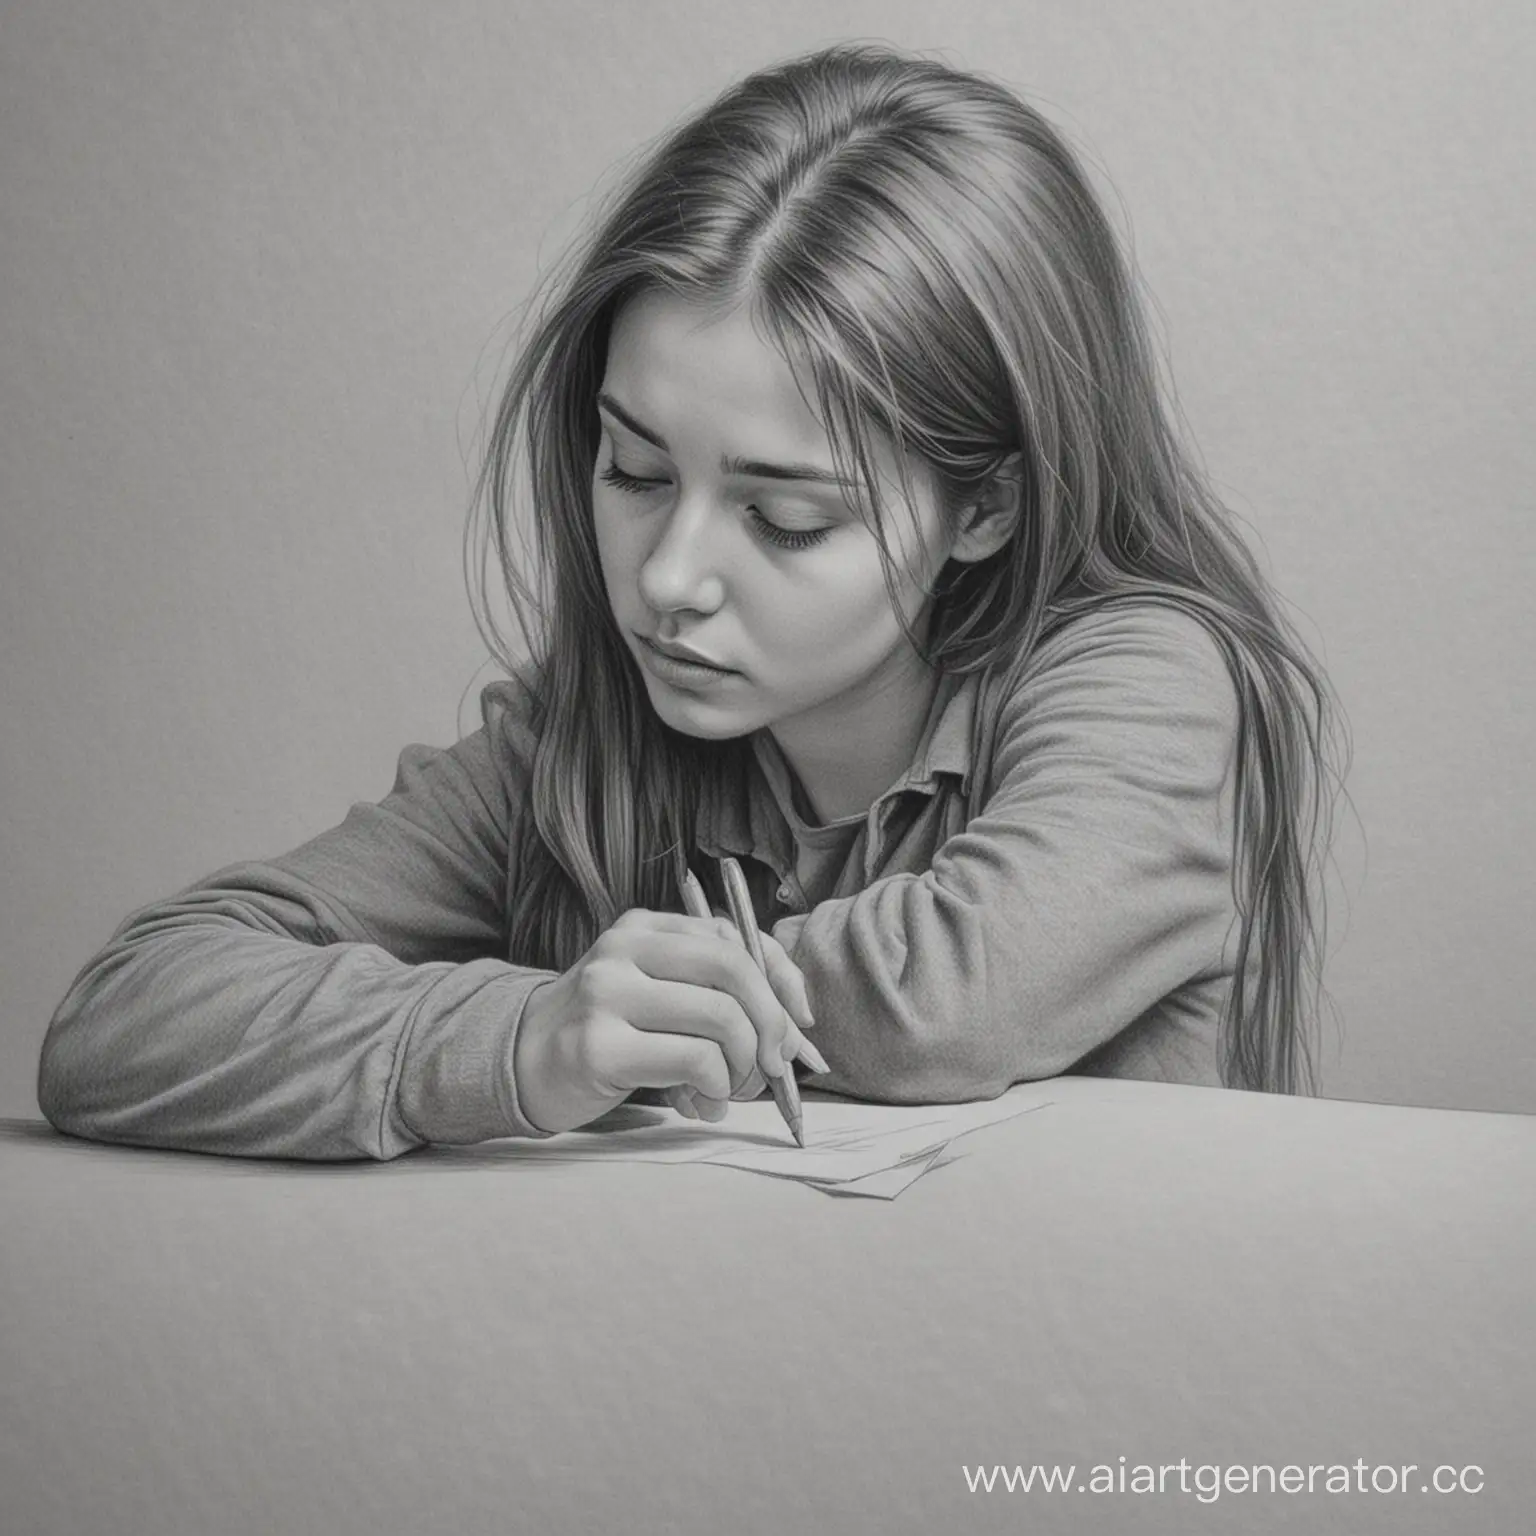 Рисунок карандашом не професиональным художником.Выразить на рисунке грусть и одиночество.